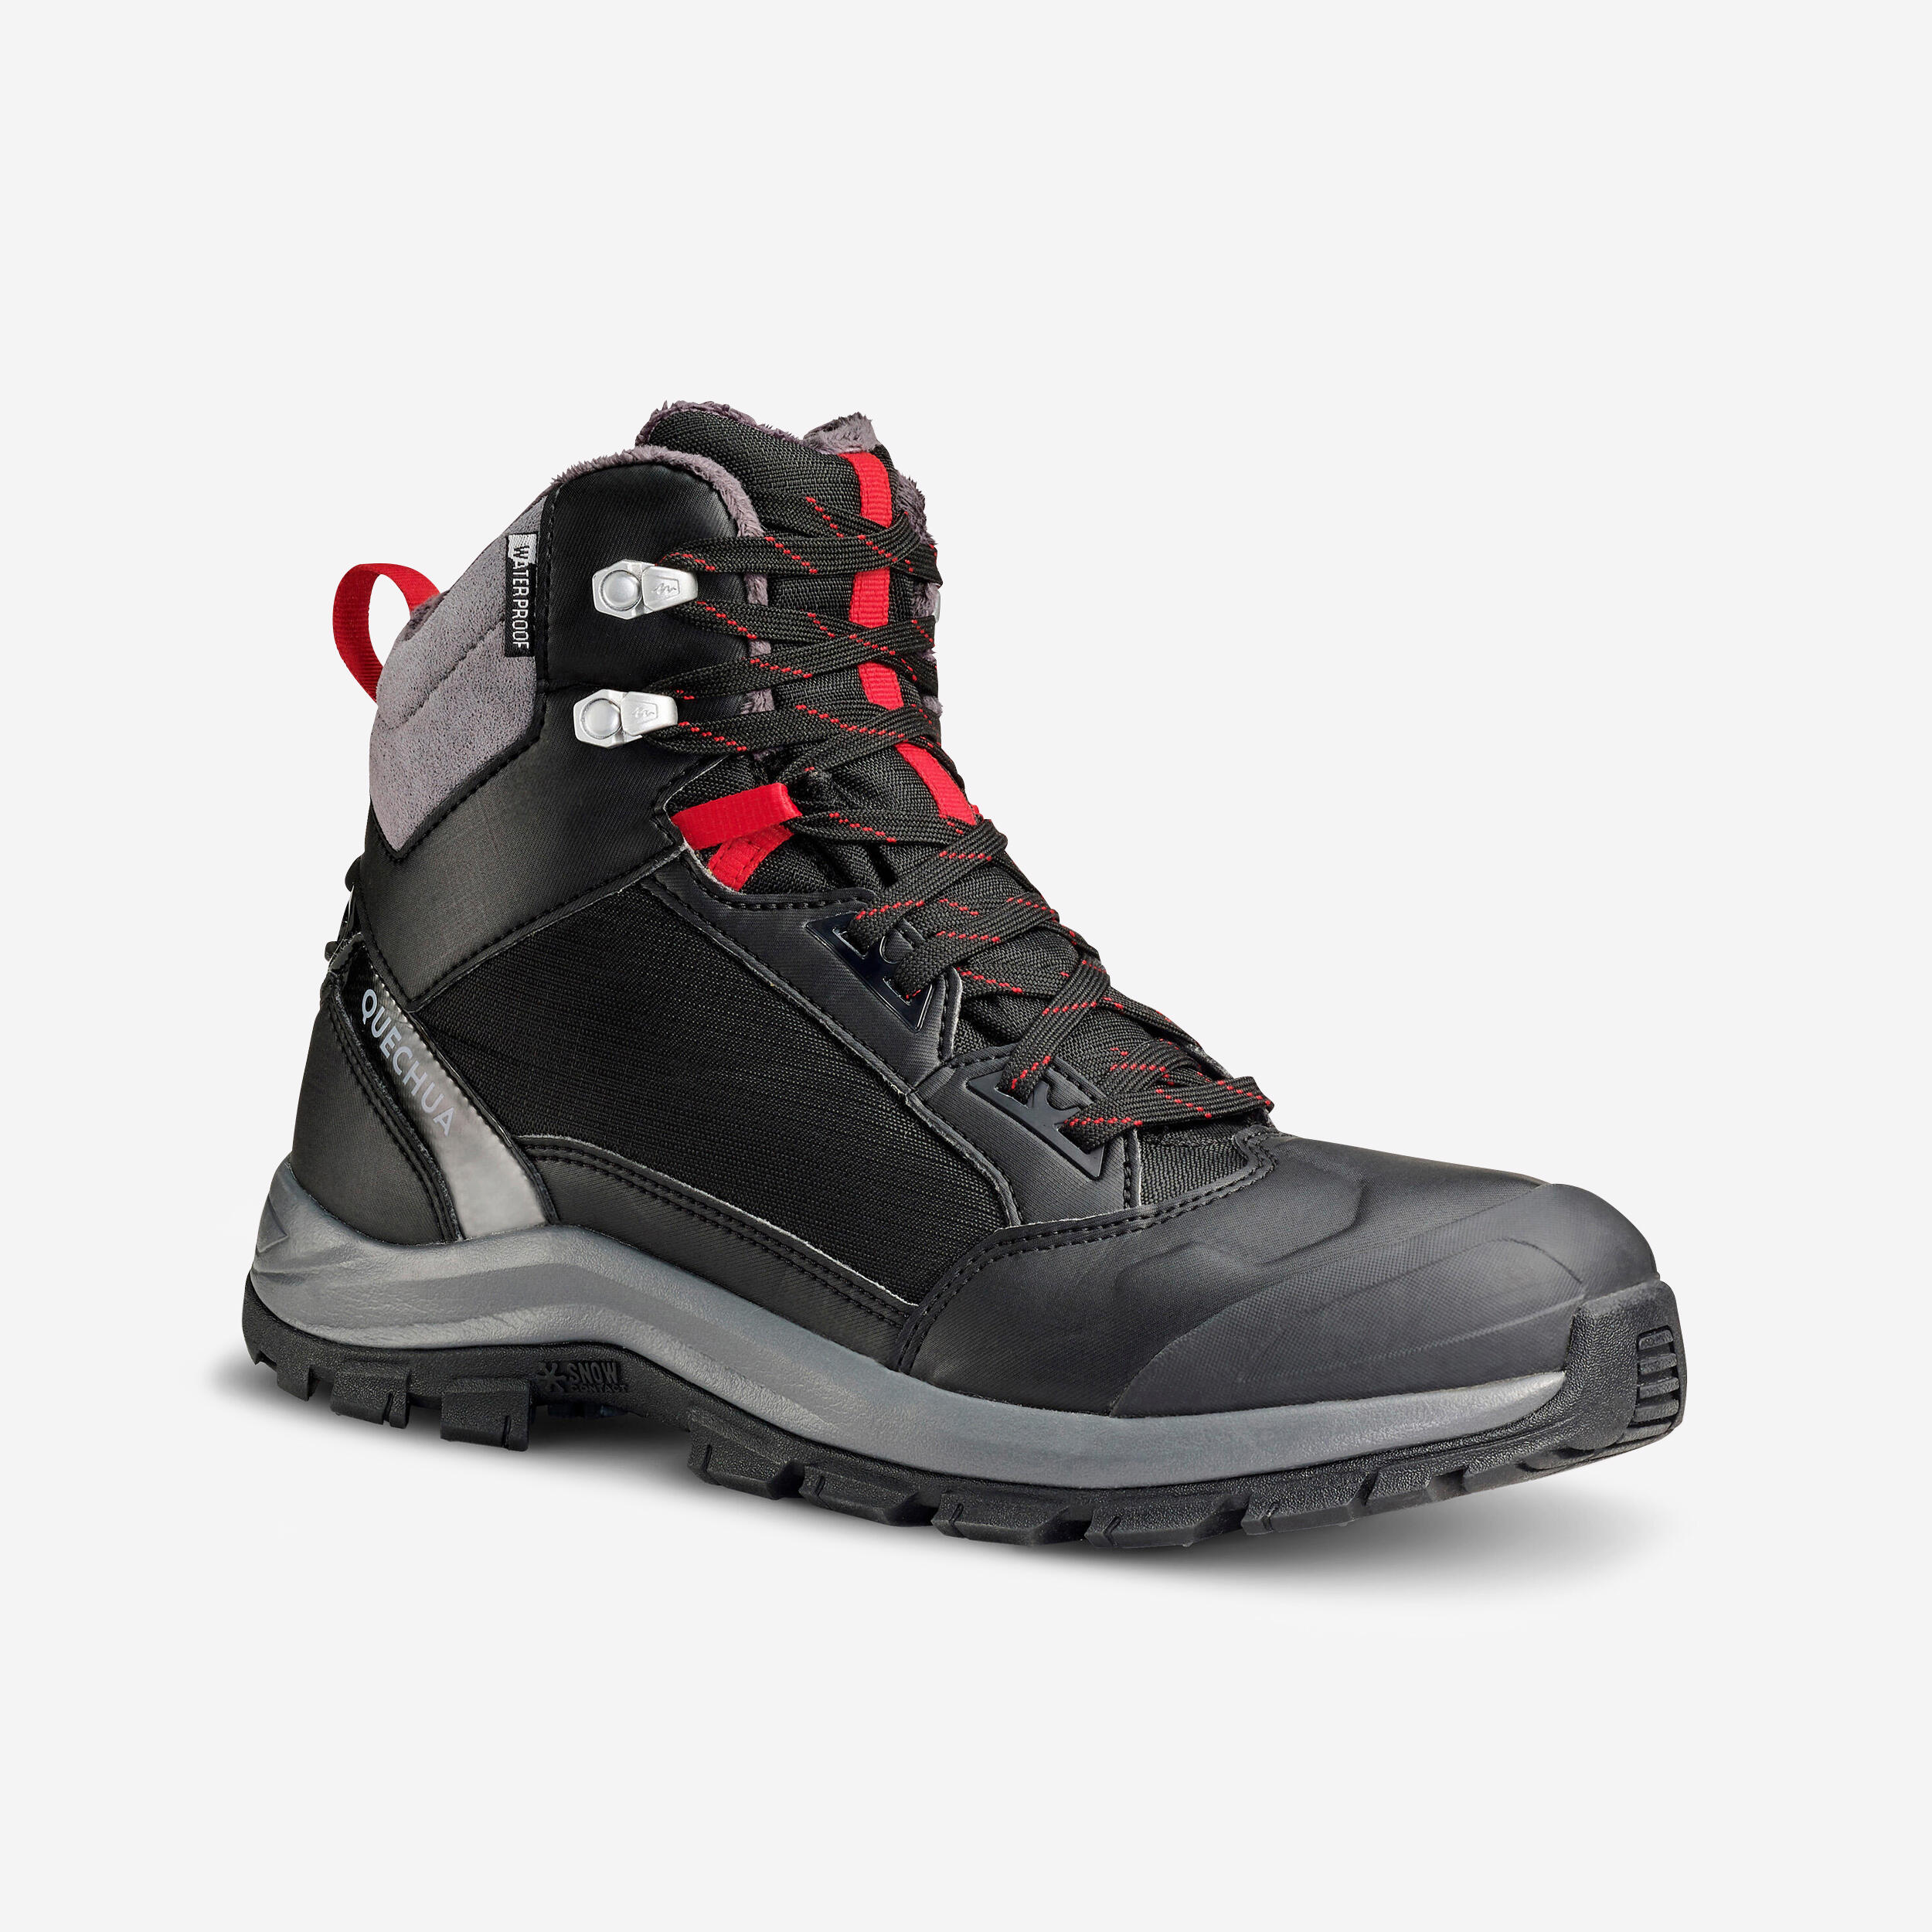 Men’s Winter Boots - SH 500 - QUECHUA